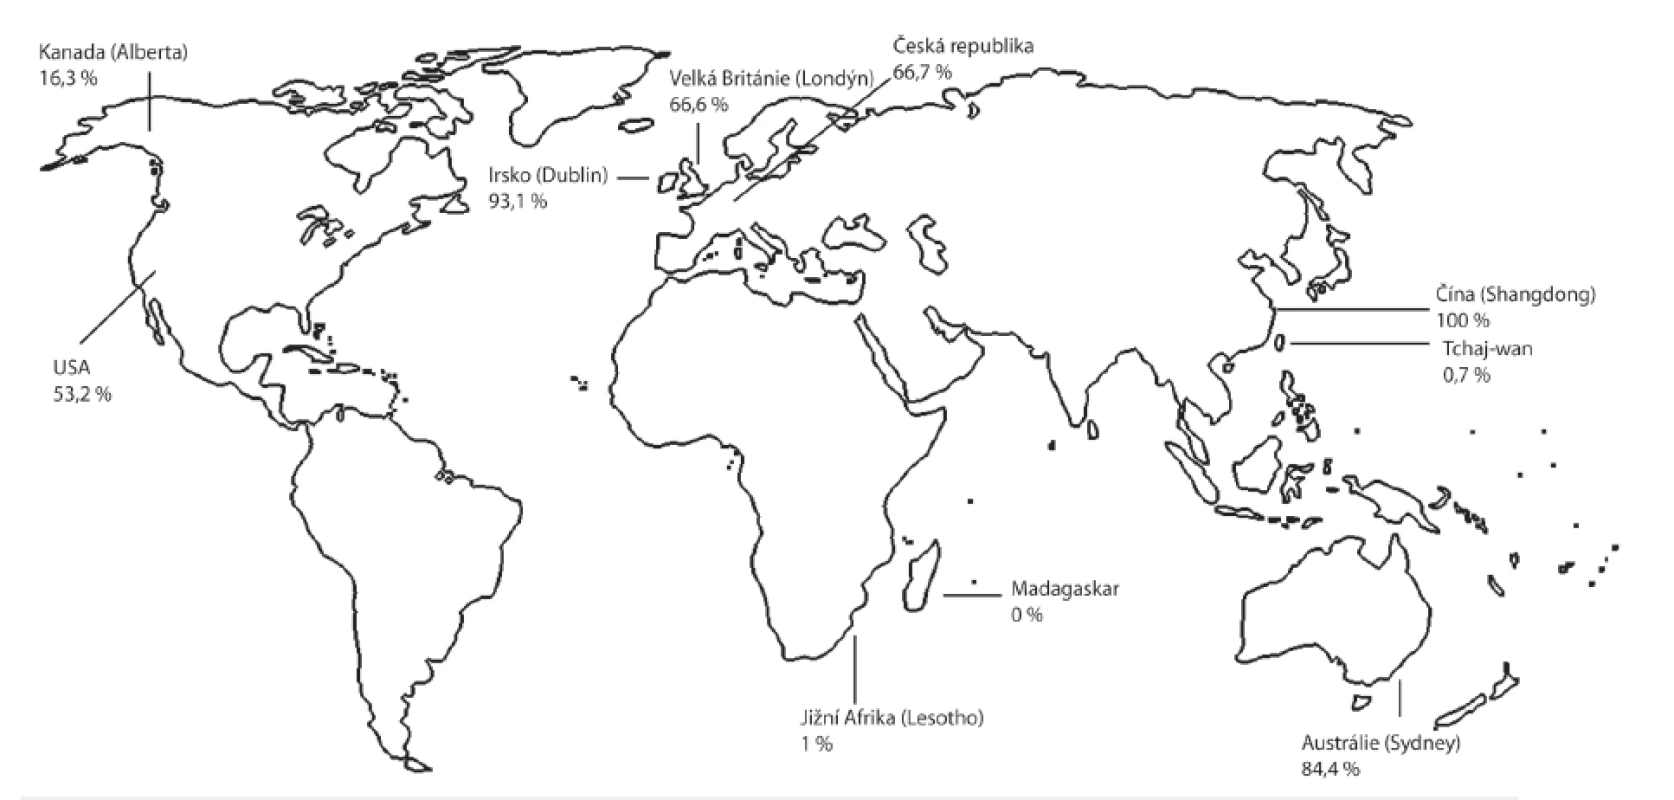 Distribuce prevalence rezistentních kmenů TPA ve světě
Vysoká prevalence rezistentních kmenů byla popsána v Austrálii, Číně, Irsku, USA a Velké Británii. Nižší prevalence byla zaznamenána v Kanadě, Jižní Africe a na Tchaj-wanu a nulová prevalence těchto kmenů byla zaznamenána na Madagaskaru. Byla použita data pouze z recentních publikačních zdrojů (2010–2014) [48, 56, 57, 58, 59, 60, 61, 62, 63, 64].&lt;br&gt;
Fig. 4. World distribution of the prevalence of resistant TPA strains. High prevalence countries: Australia, China, Irland, USA, and UK. Lower prevalence countries: Canada, South Africa, and Taiwan. Zero prevalence country: Madagaskar. All data were taken from recent sources (2010–2014) [48, 56, 57, 58, 59, 60, 61, 62, 63, 64].